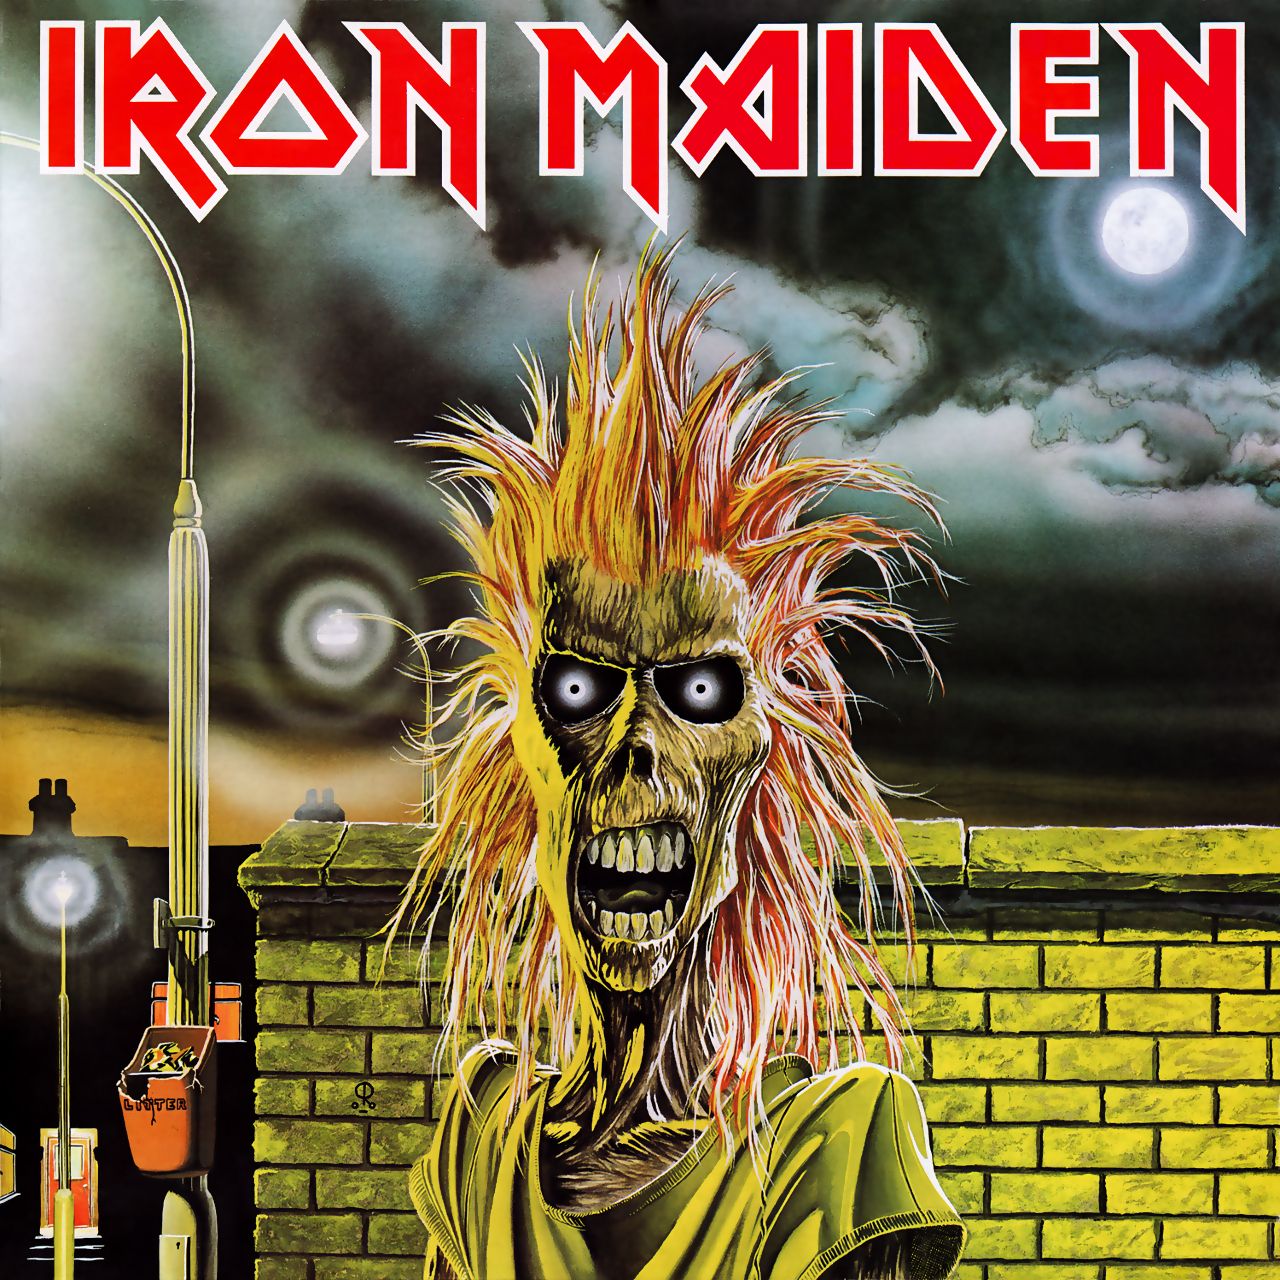 El disco debut de Iron Maiden (Iron Maiden) está cumpliendo 41 años de historia en el Heavy Metal (Foto: difusión).